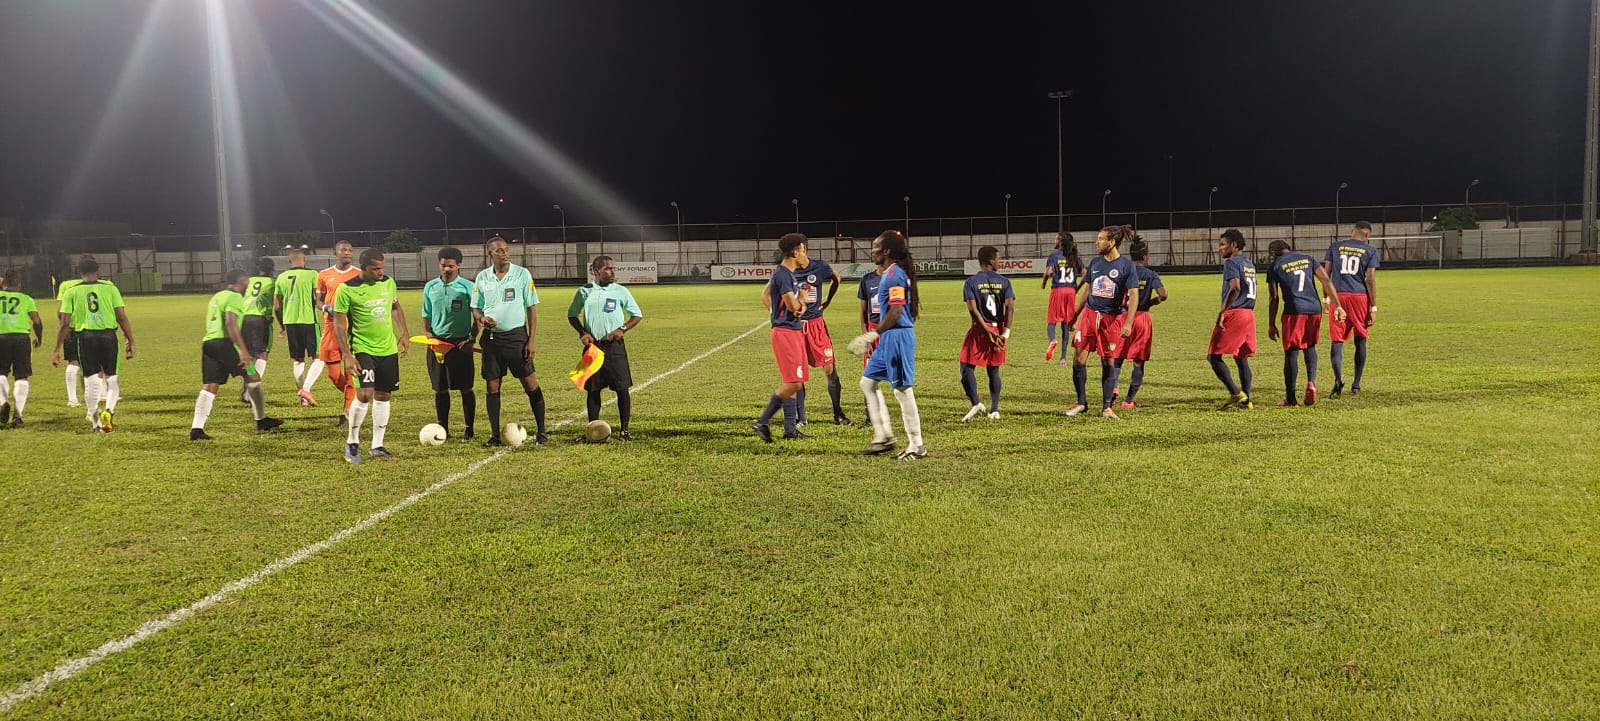     Les premiers résultats des 16e de finale de la coupe de Martinique

